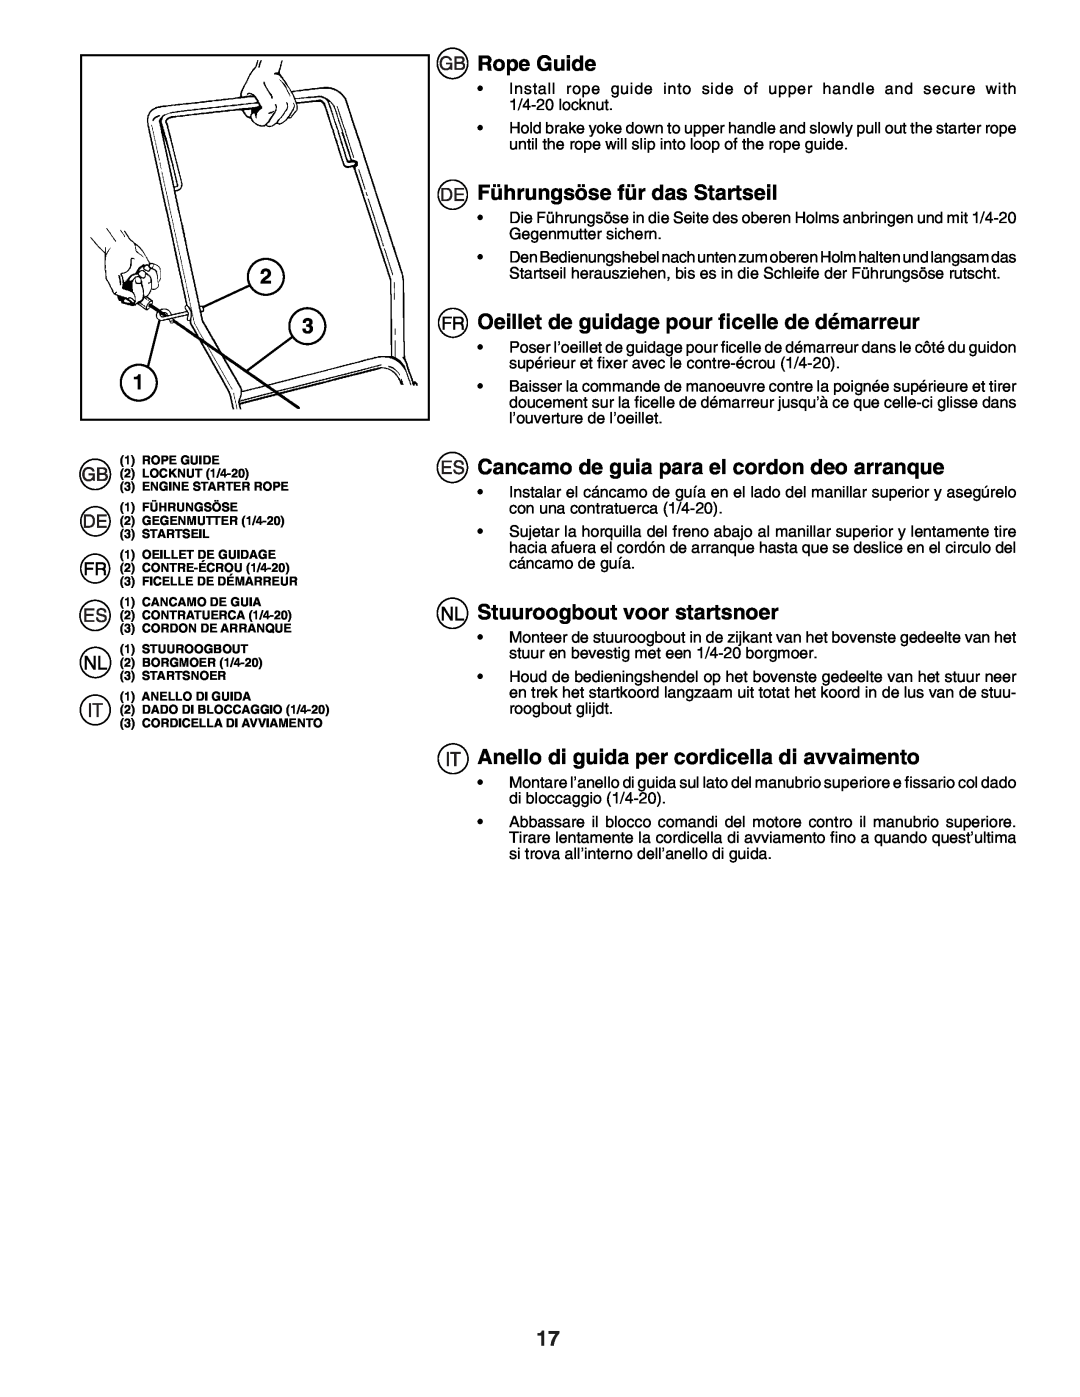 Husqvarna J50R instruction manual Rope Guide, Führungsöse für das Startseil, Oeillet de guidage pour ﬁcelle de démarreur 